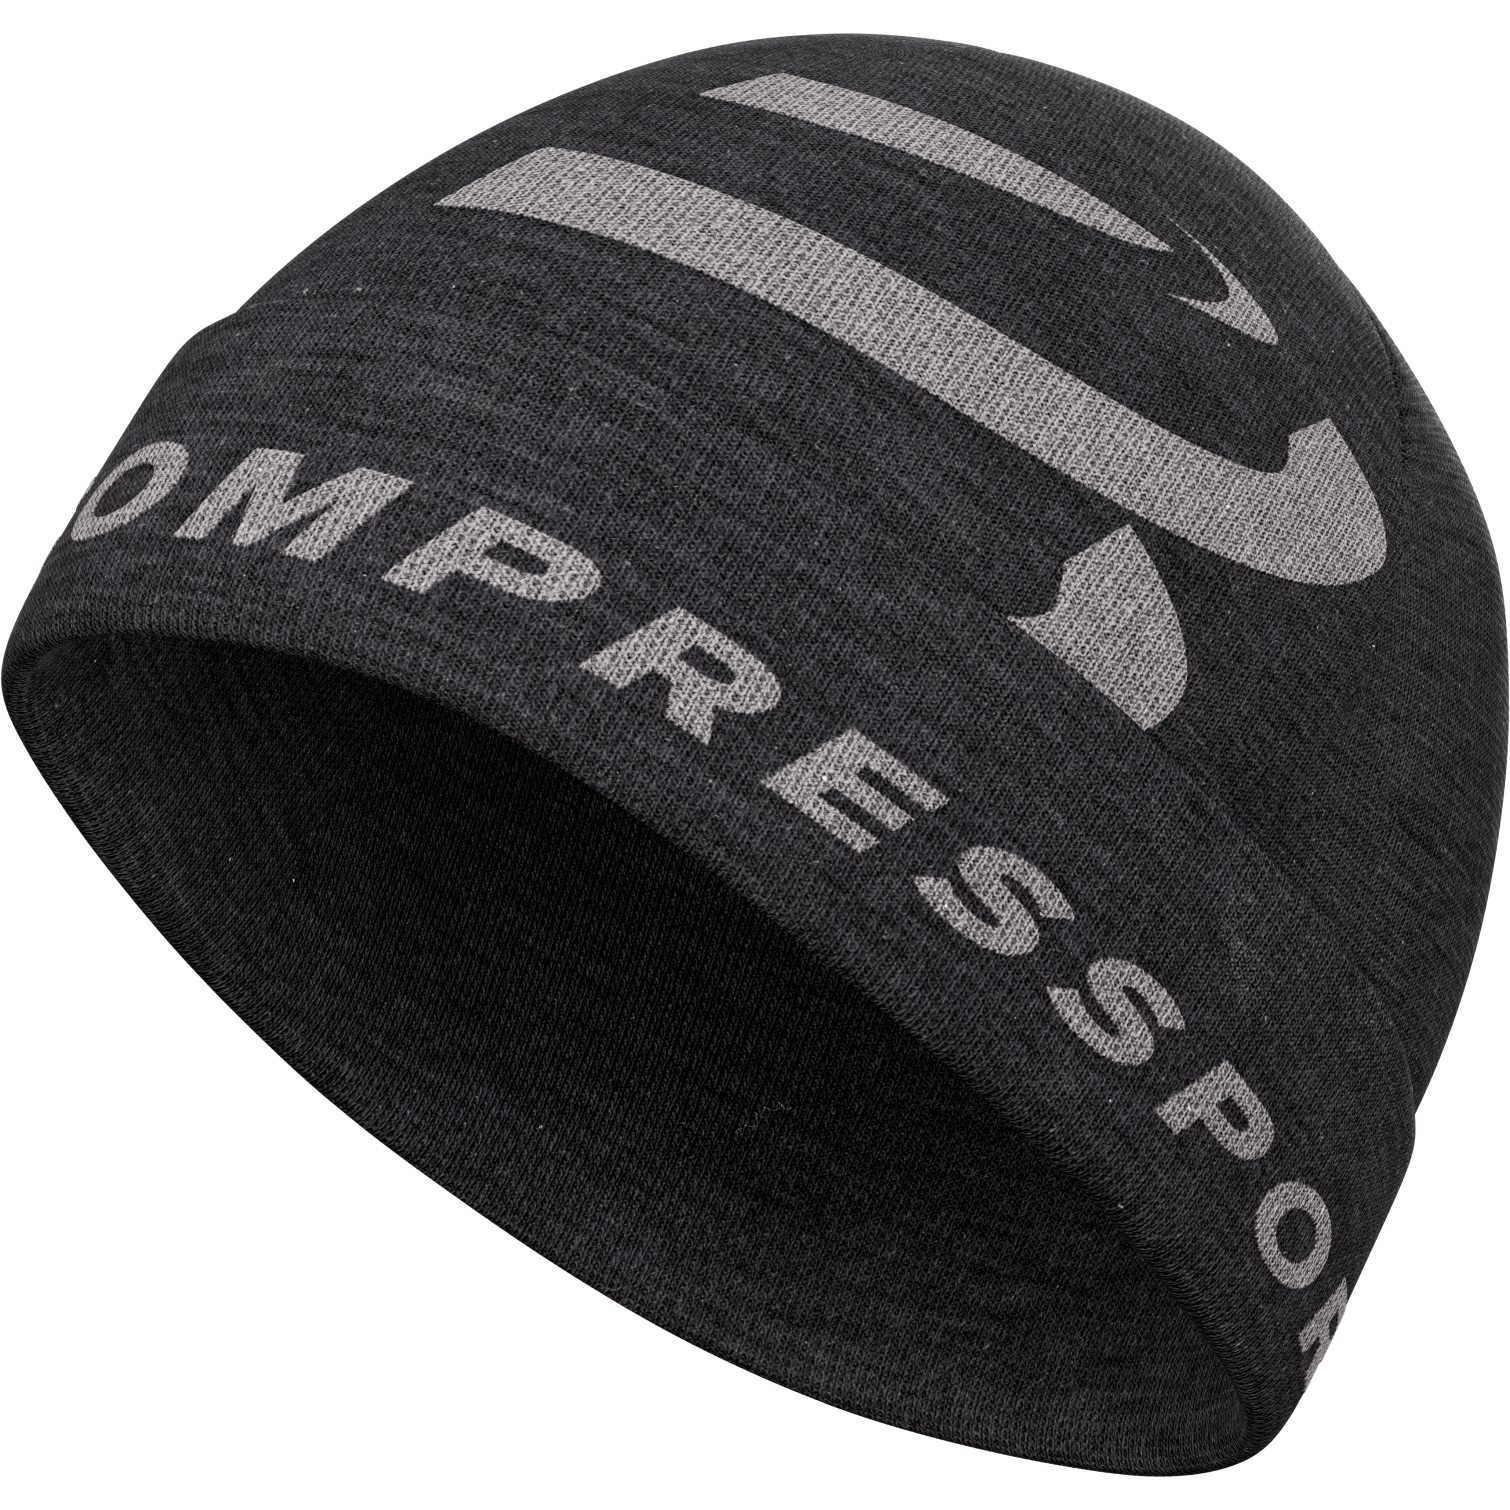 Produktbild von Compressport Casual Mütze - asphalte black